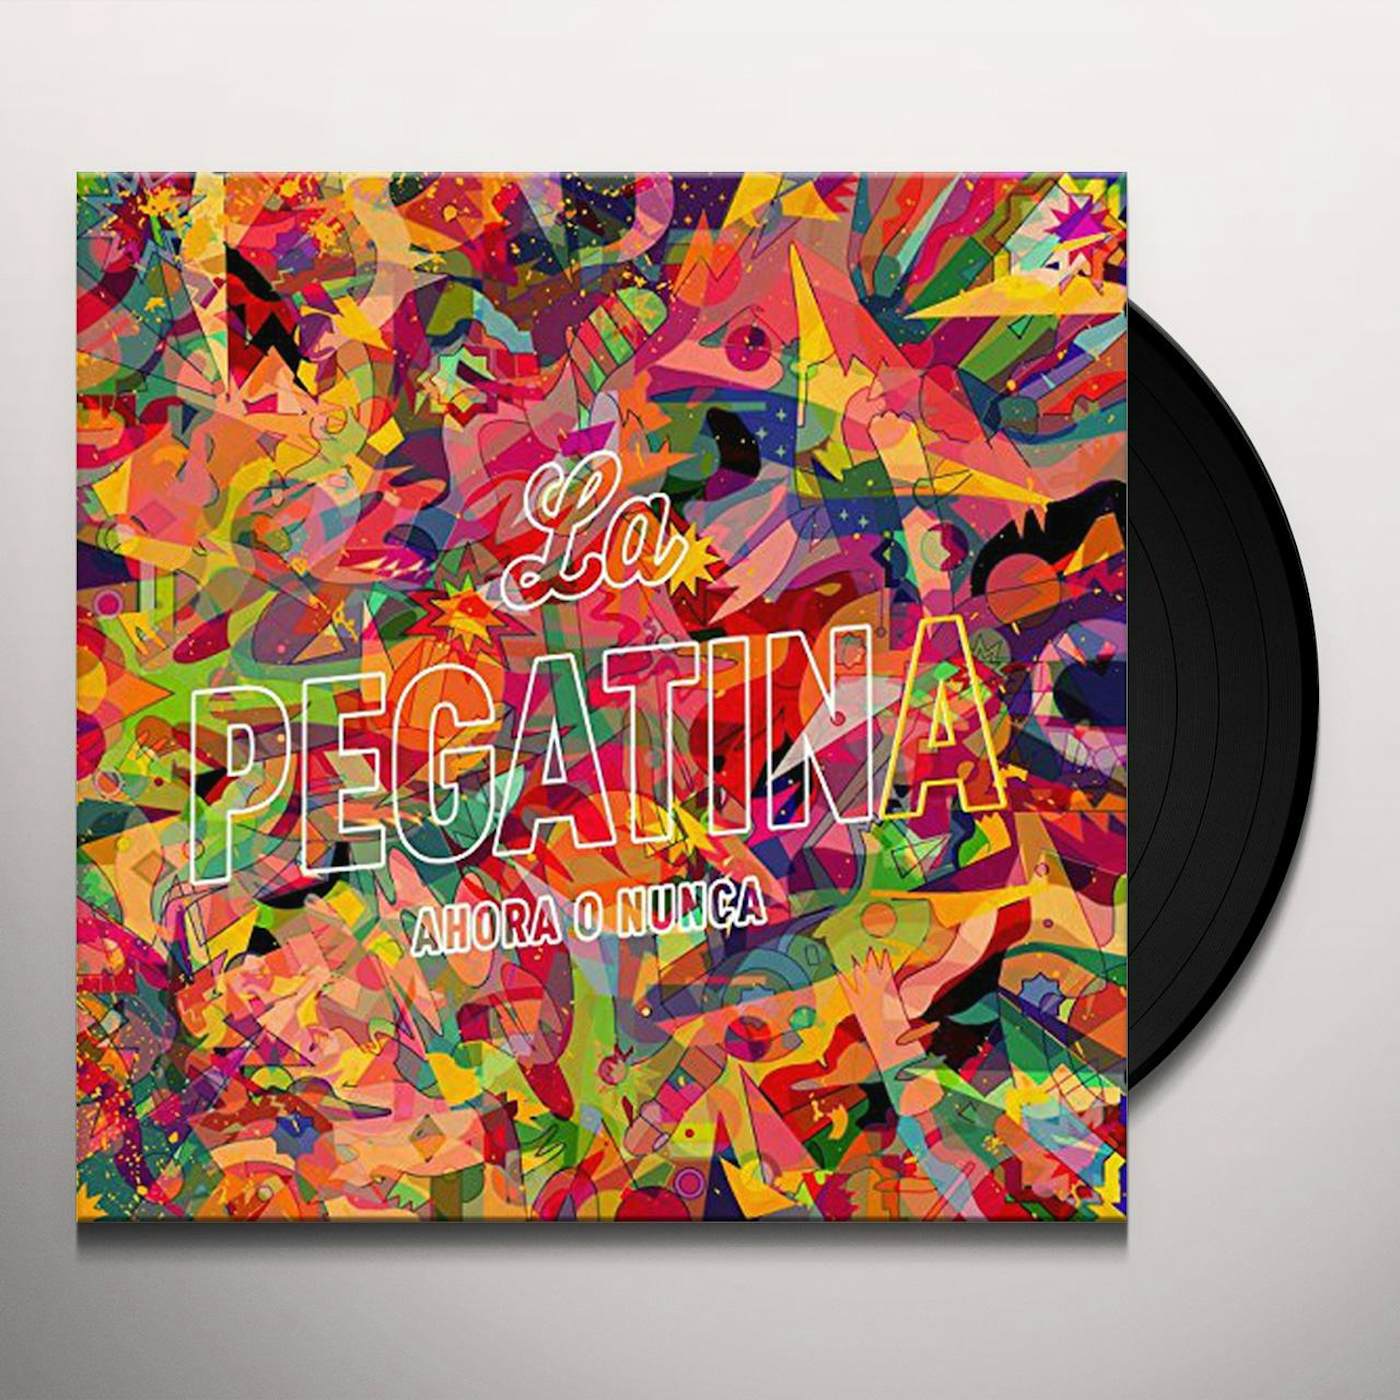 La Pegatina Ahora o nunca Vinyl Record